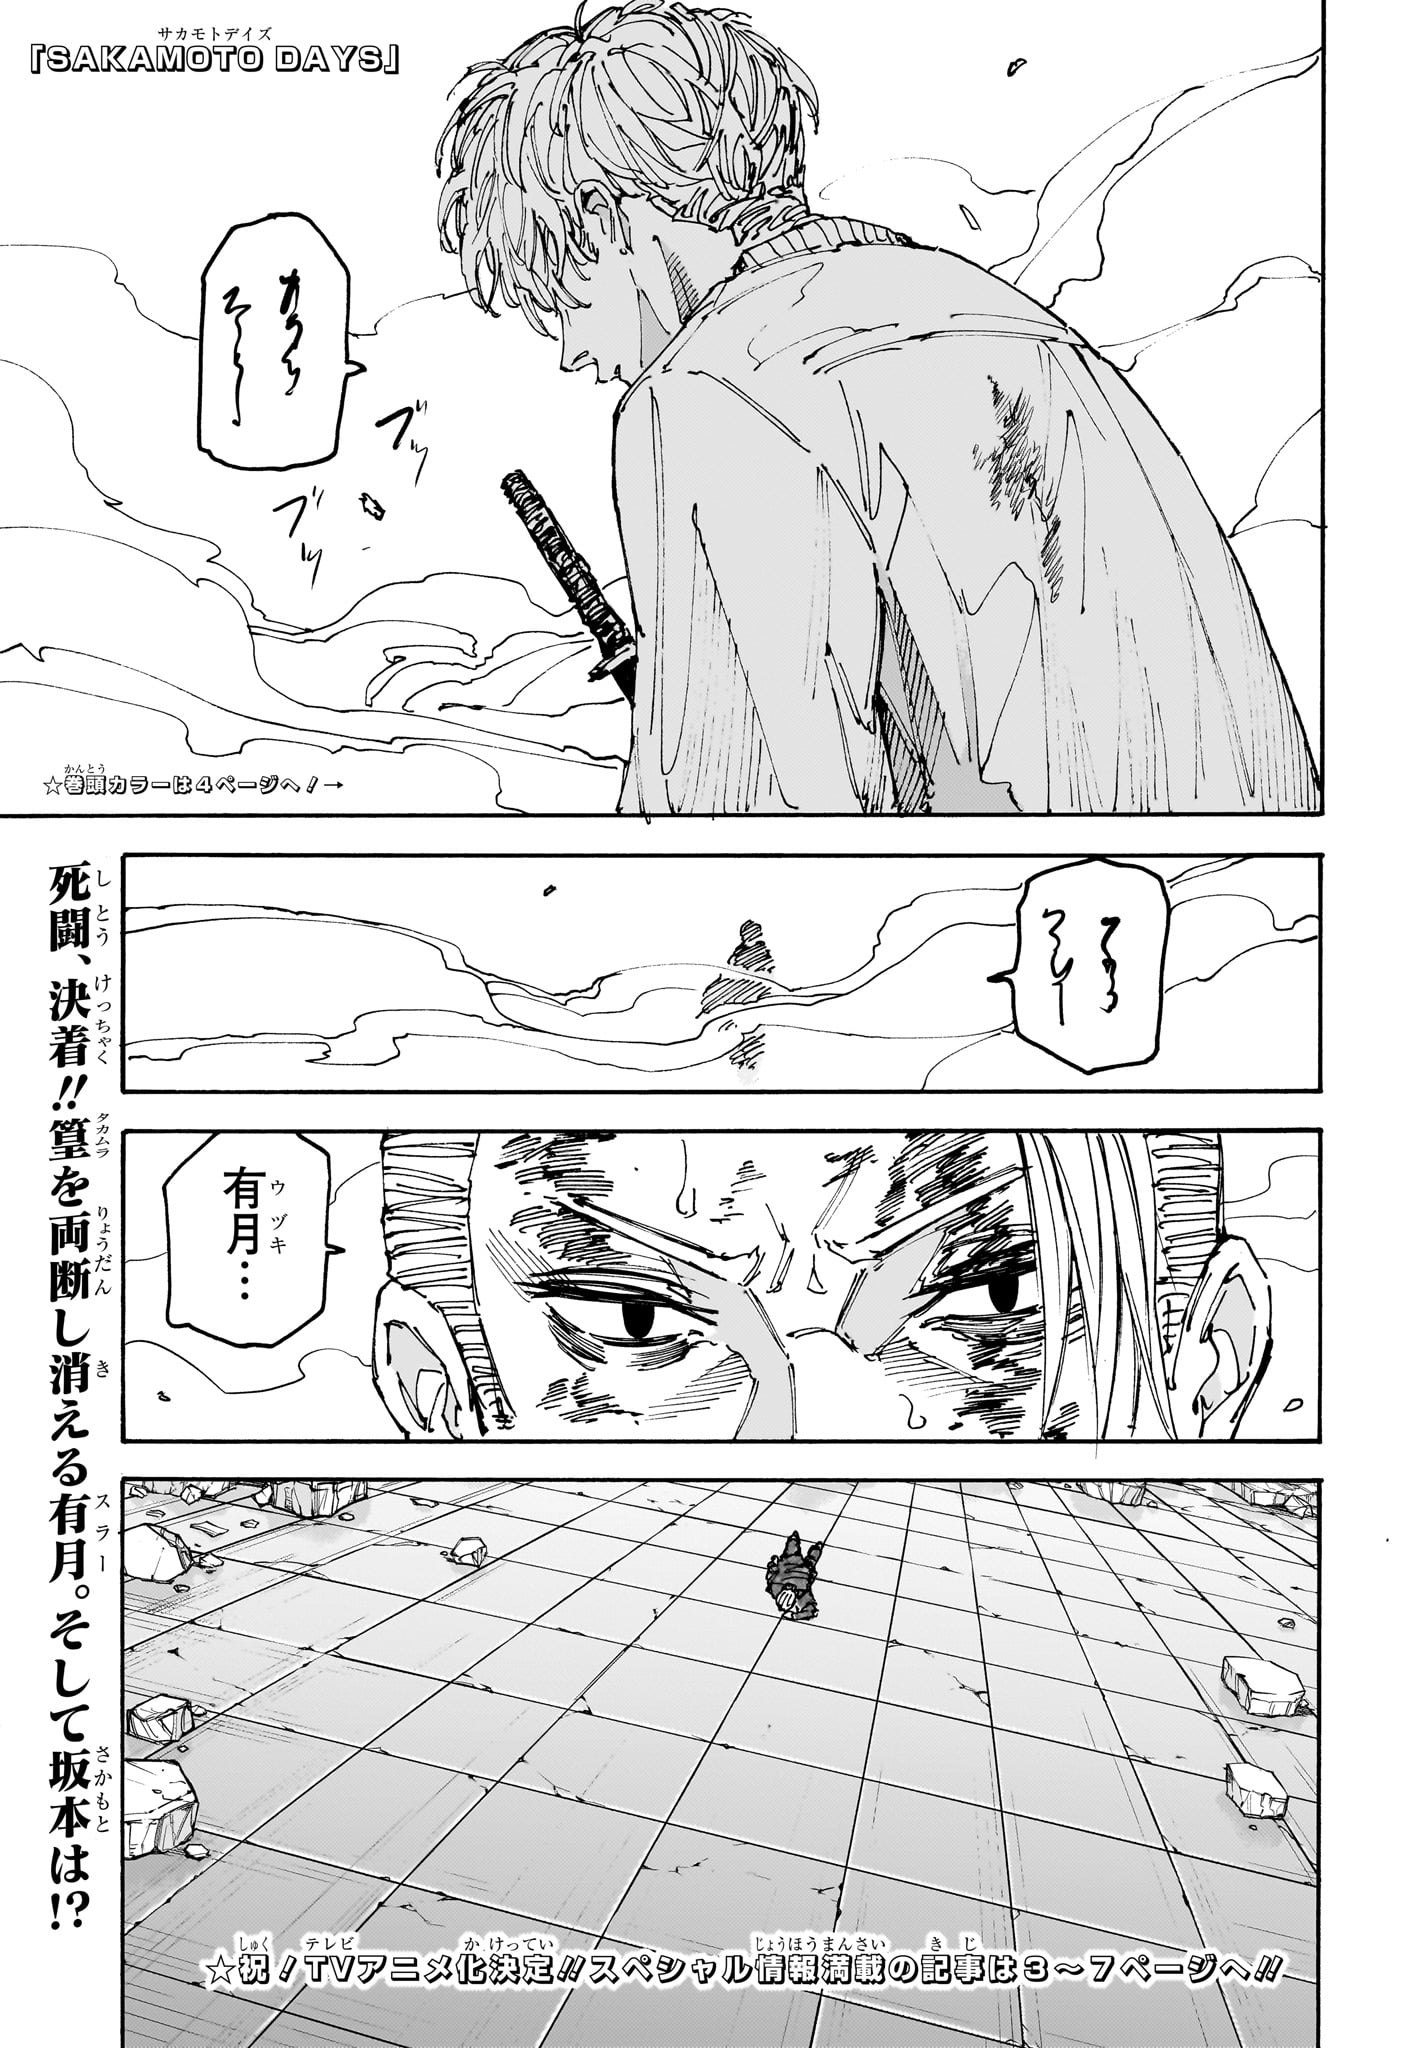 Sakamoto Days - Chapter 168 - Page 3